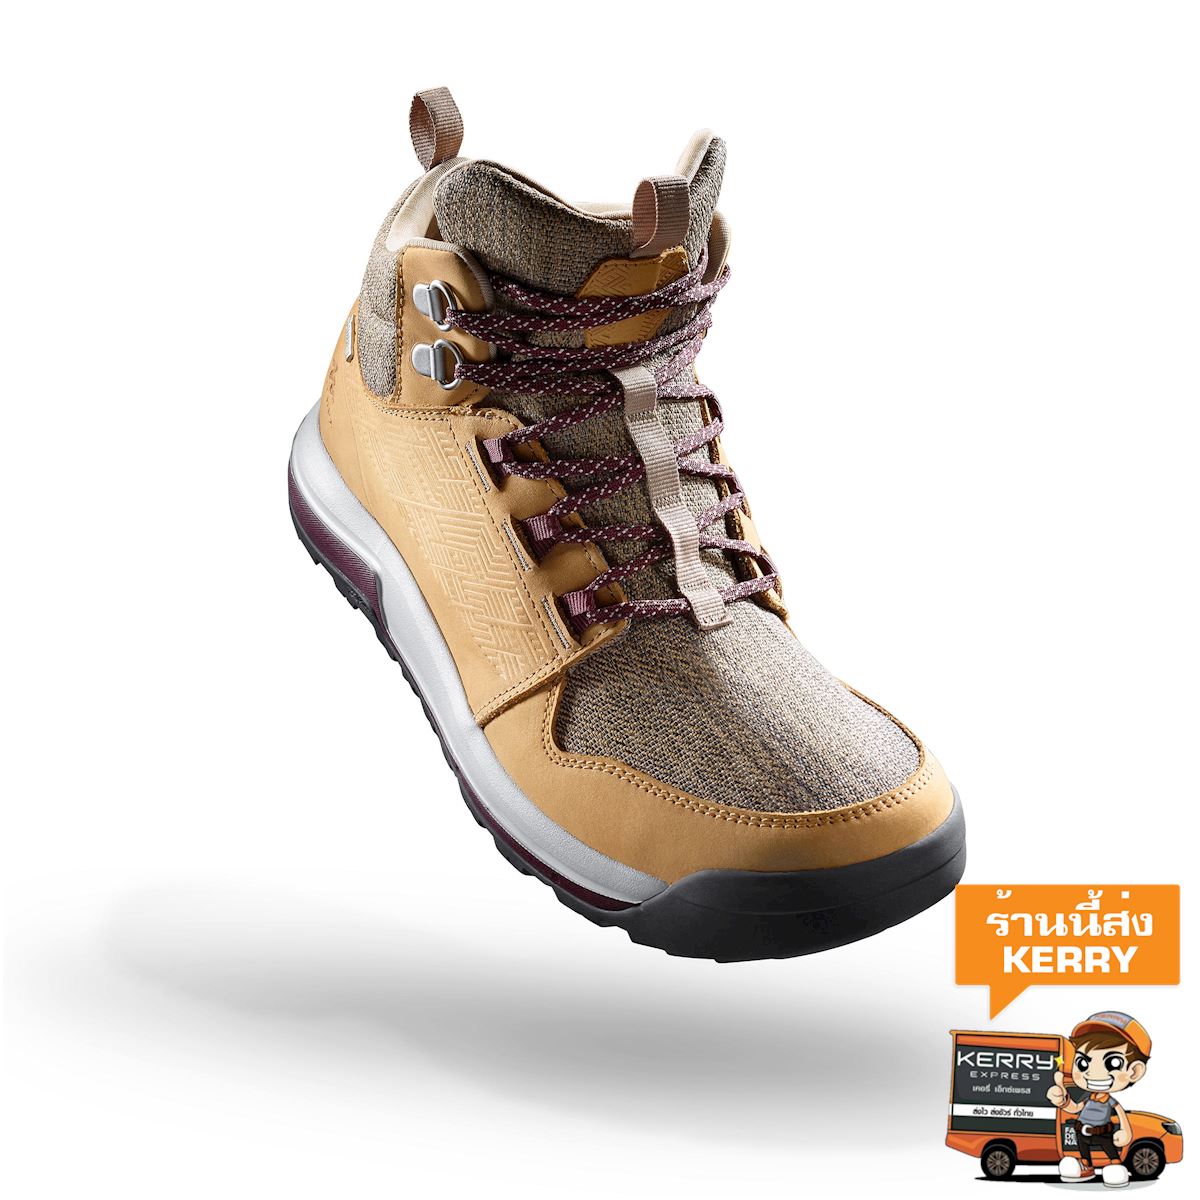 รองเท้าหุ้มข้อผู้หญิงมีคุณสมบัติกันน้ำสำหรับใส่เดินเส้นทางธรรมชาติรุ่น NH500 (สีเบจ) รองเท้า เดินป่า เดินป่าเทรกกิ้ง เดินเพื่อสุขภาพ